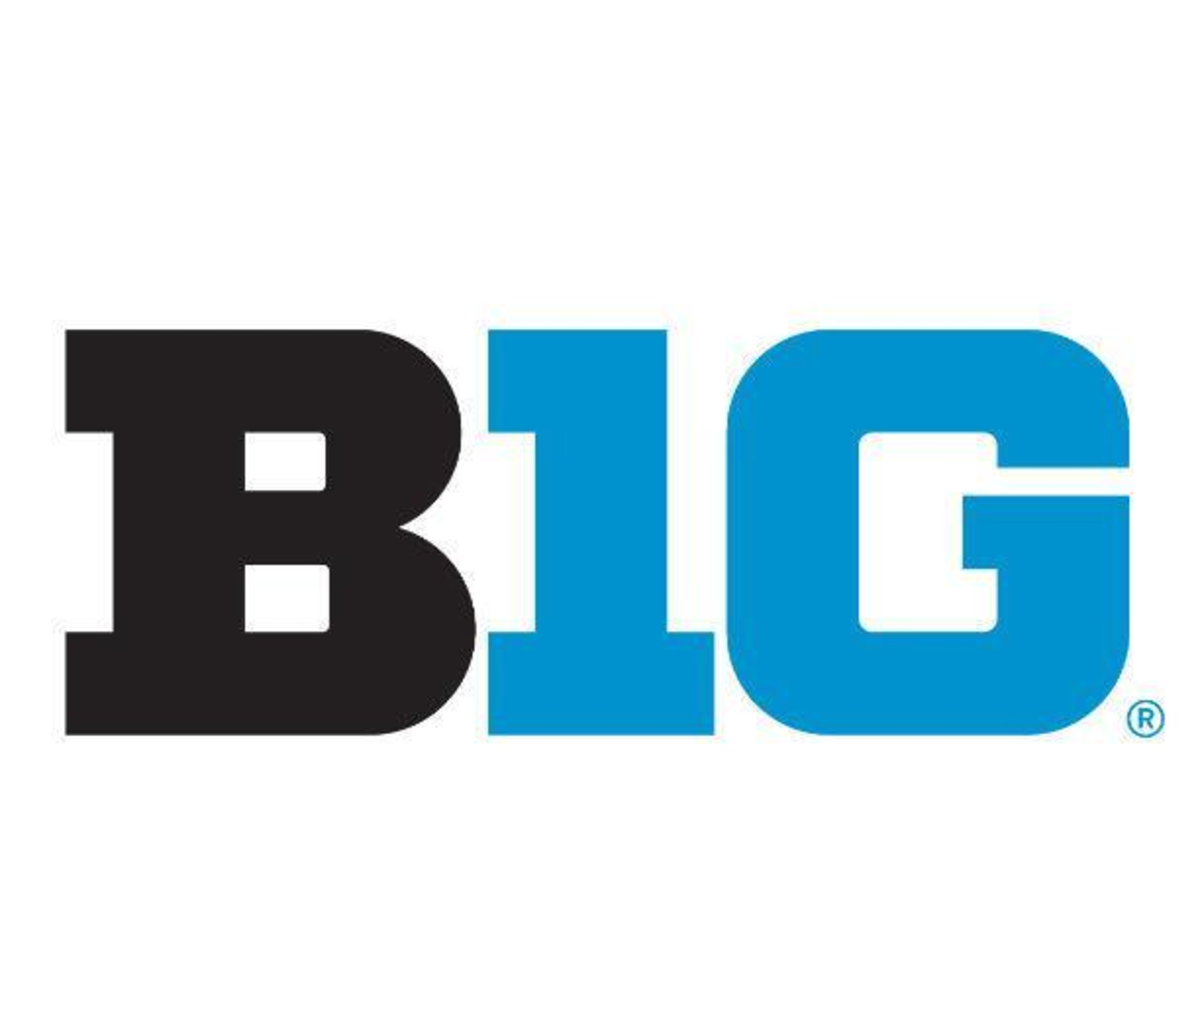 Big Ten's B1G logo.